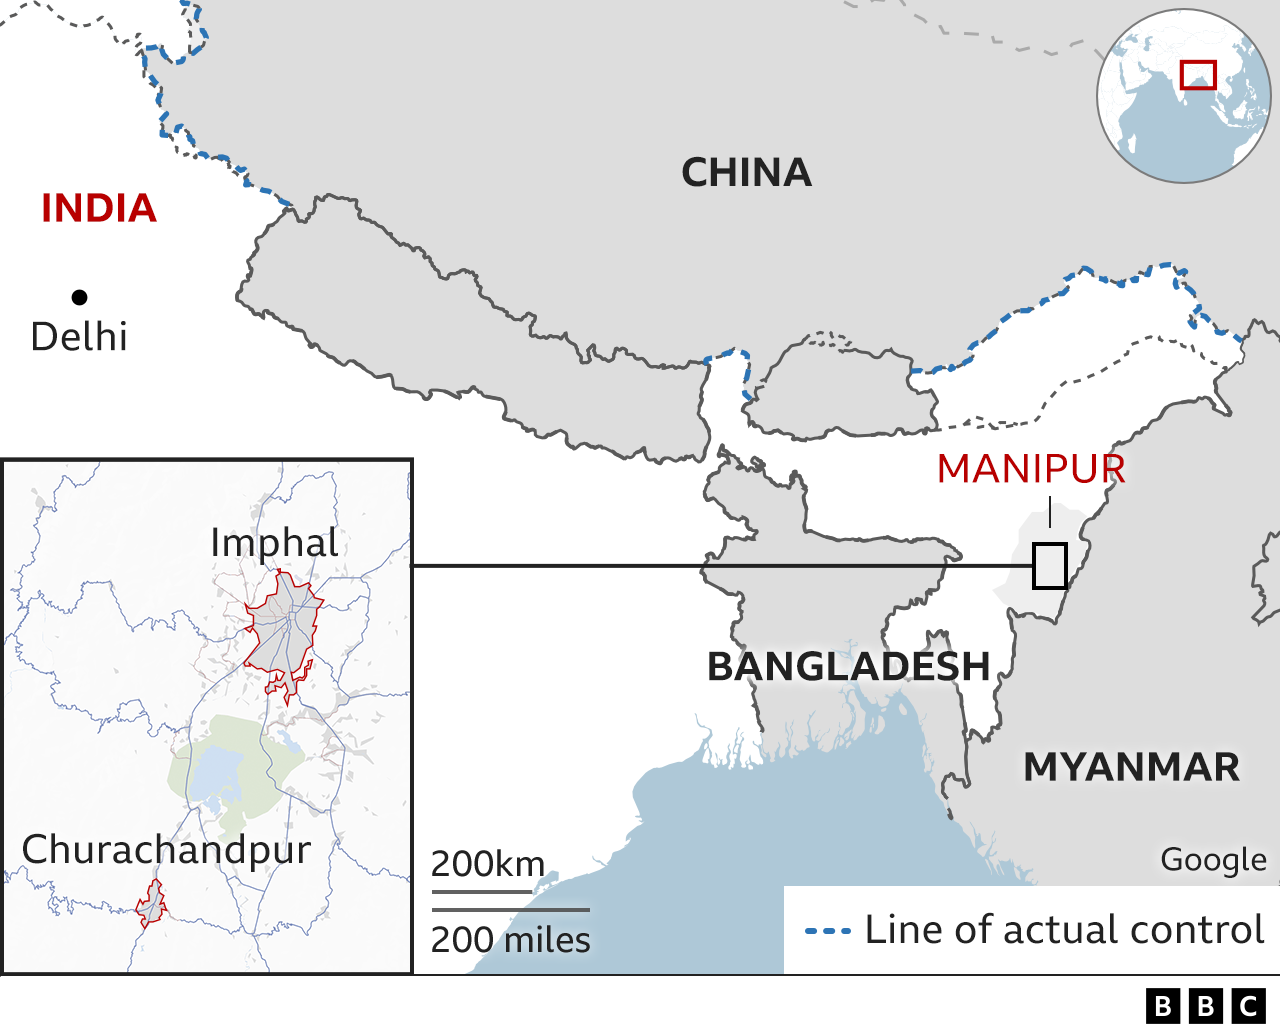 На карте показано расположение города Импхал и района Чурачандпур в Манипуре